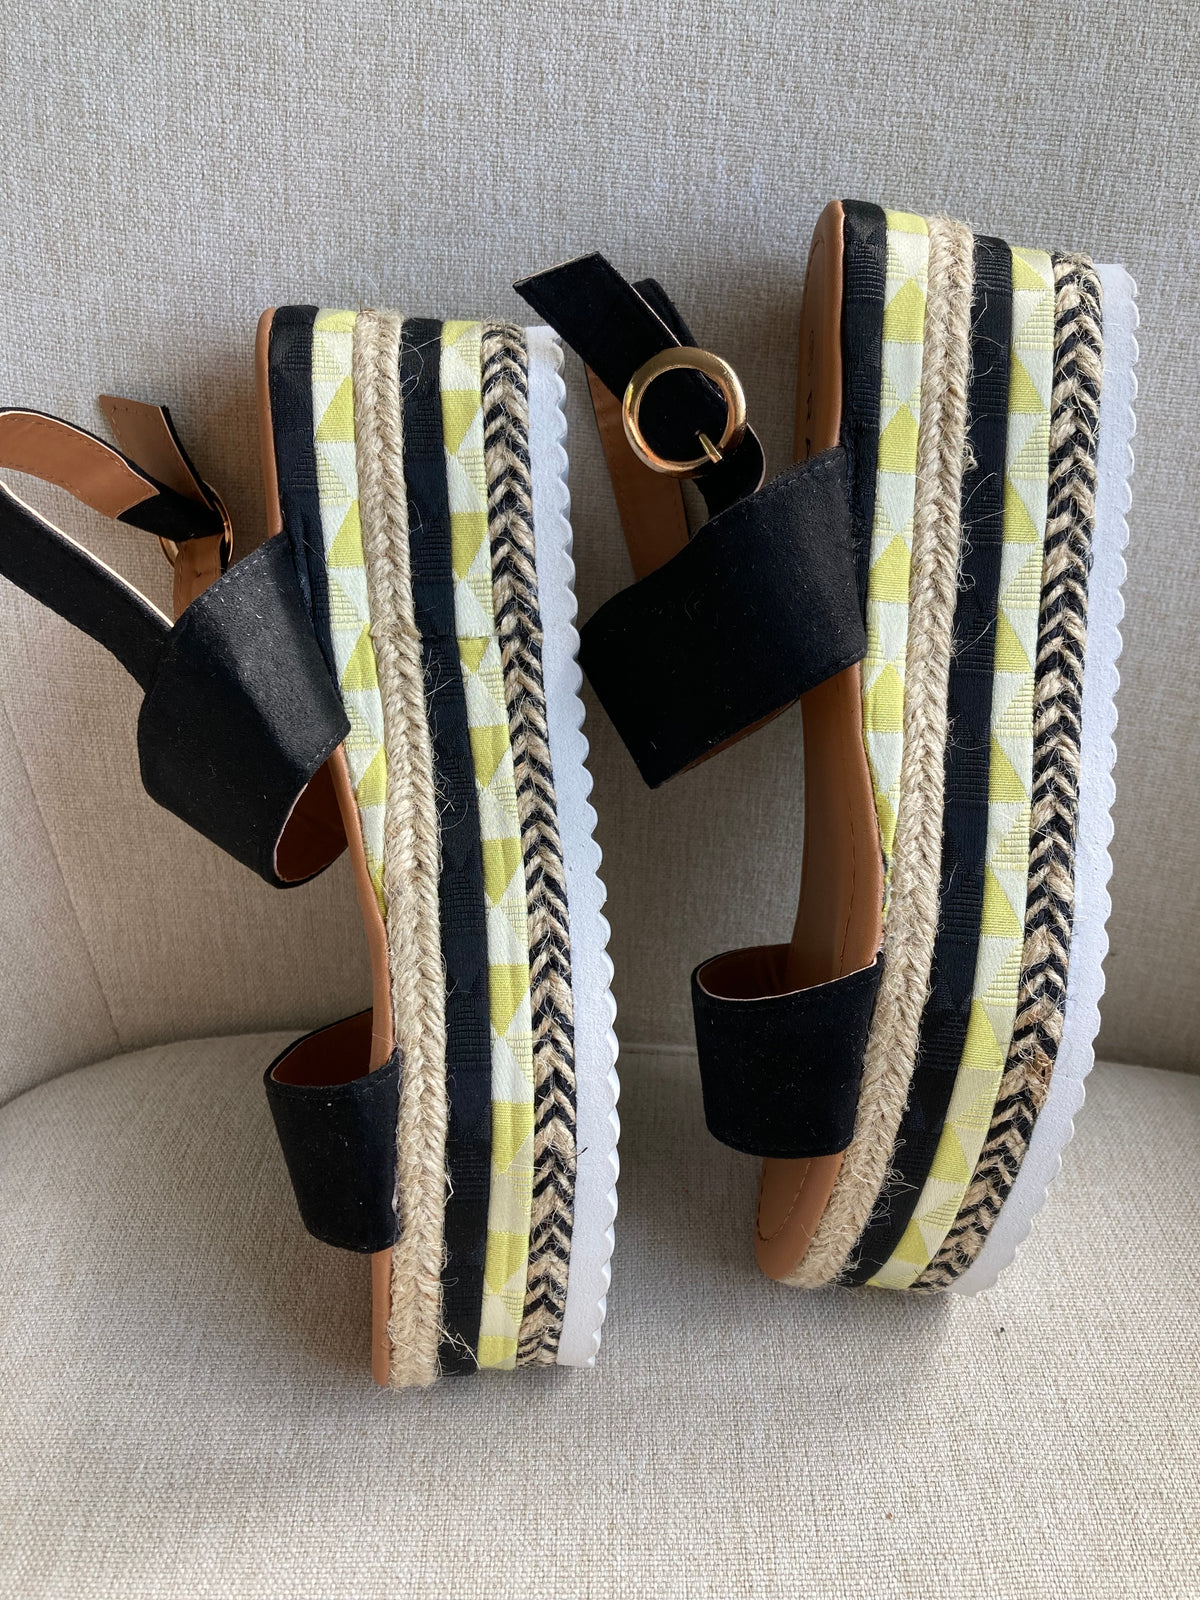 Black detail platform sandals by Bonprix - Size 6